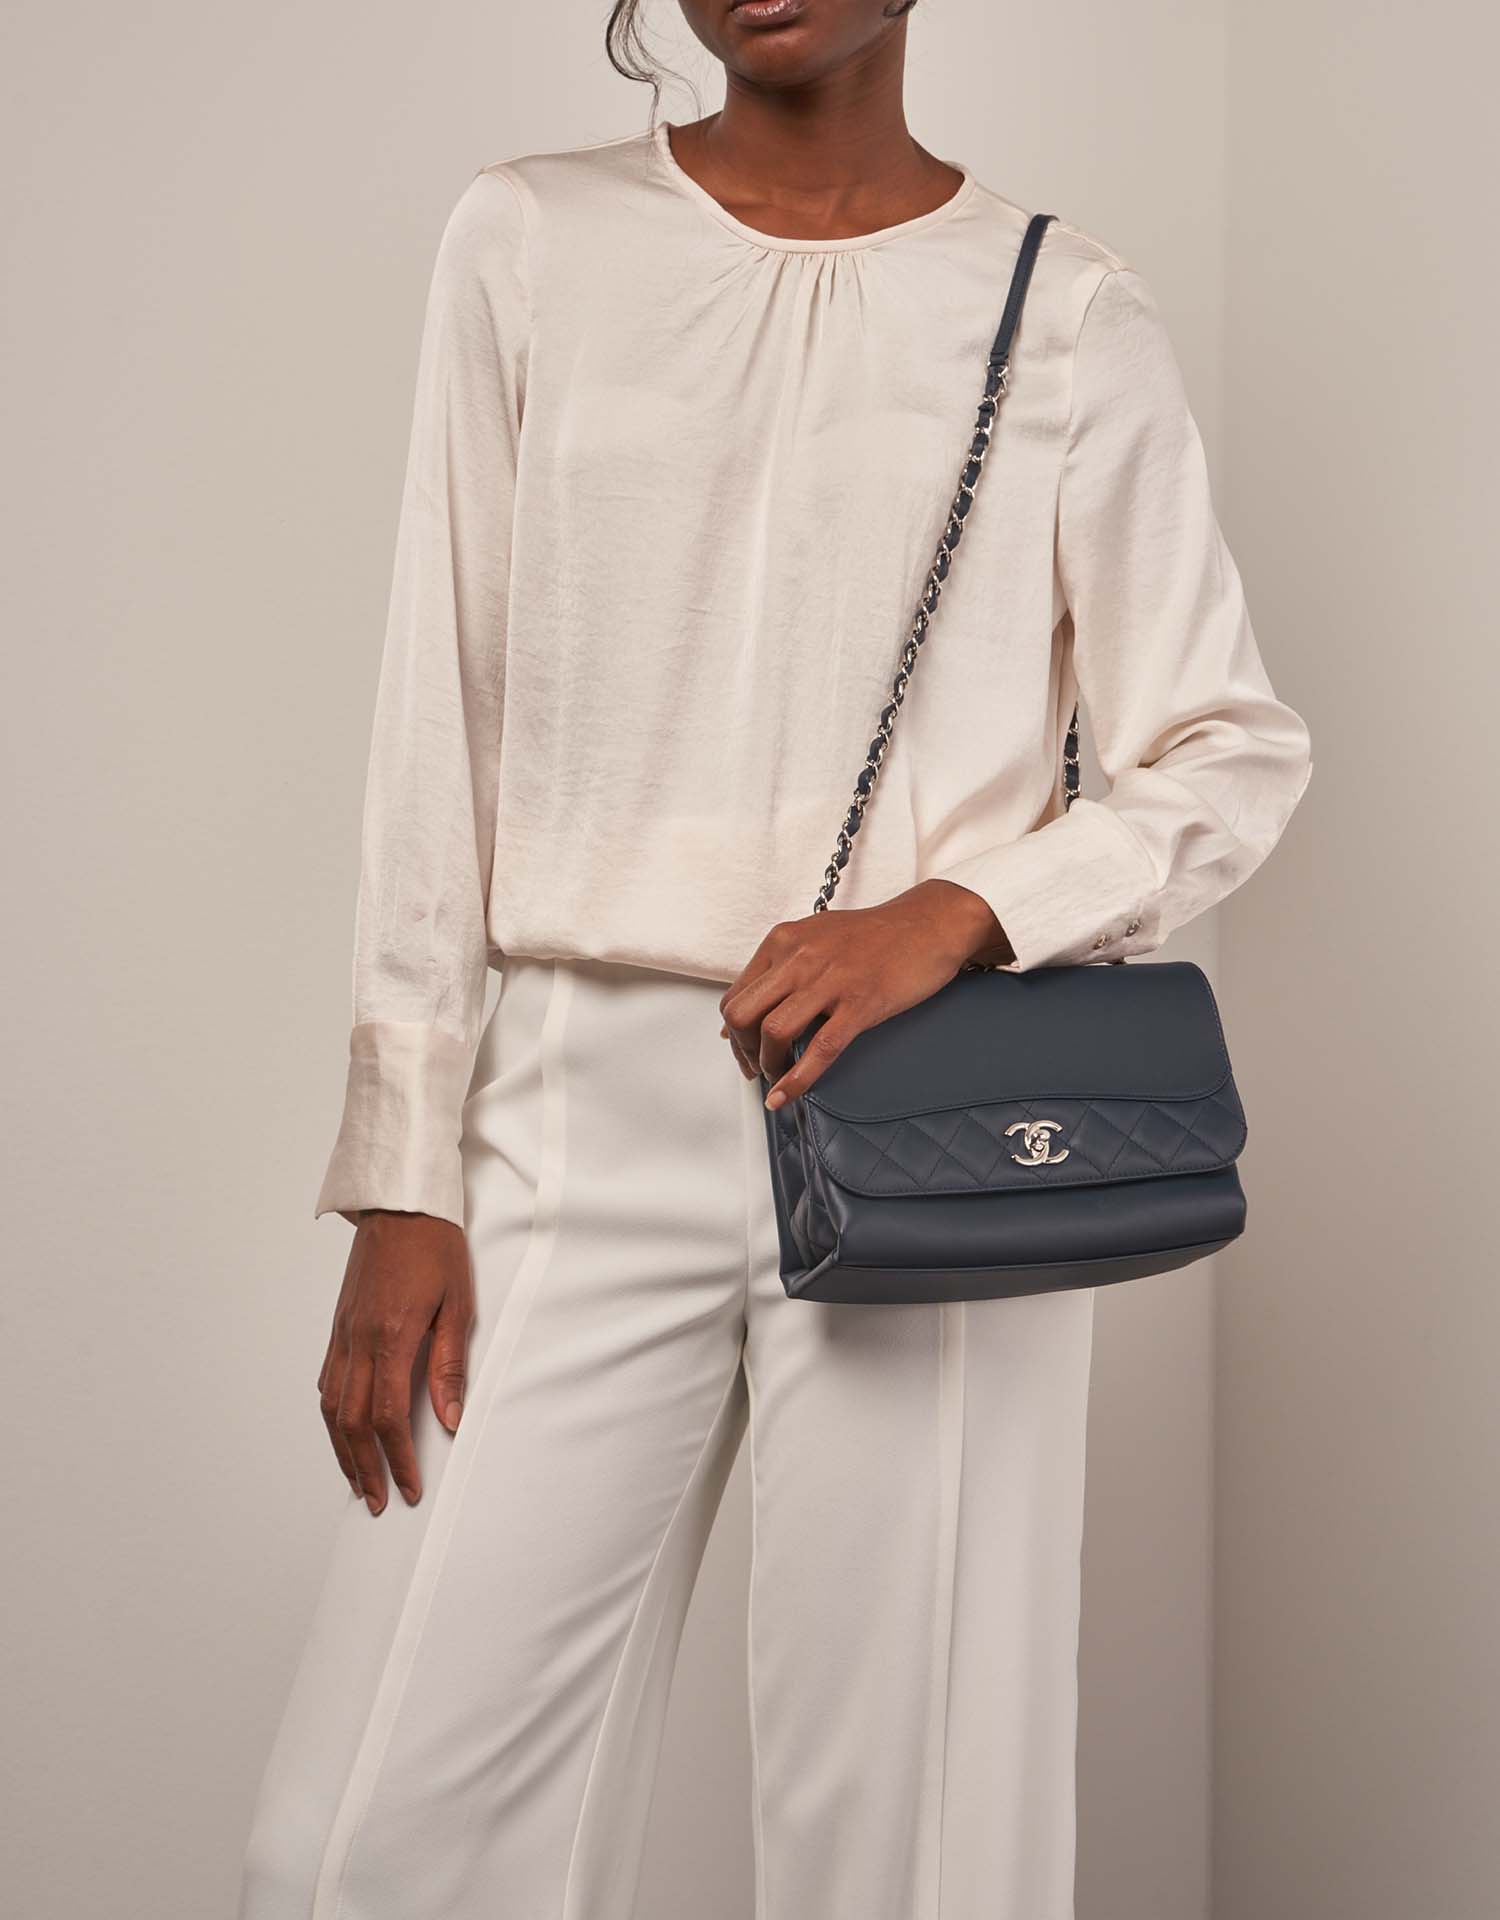 Chanel TimelessTramezzo Medium Navy on Model | Sell your designer bag on Saclab.com